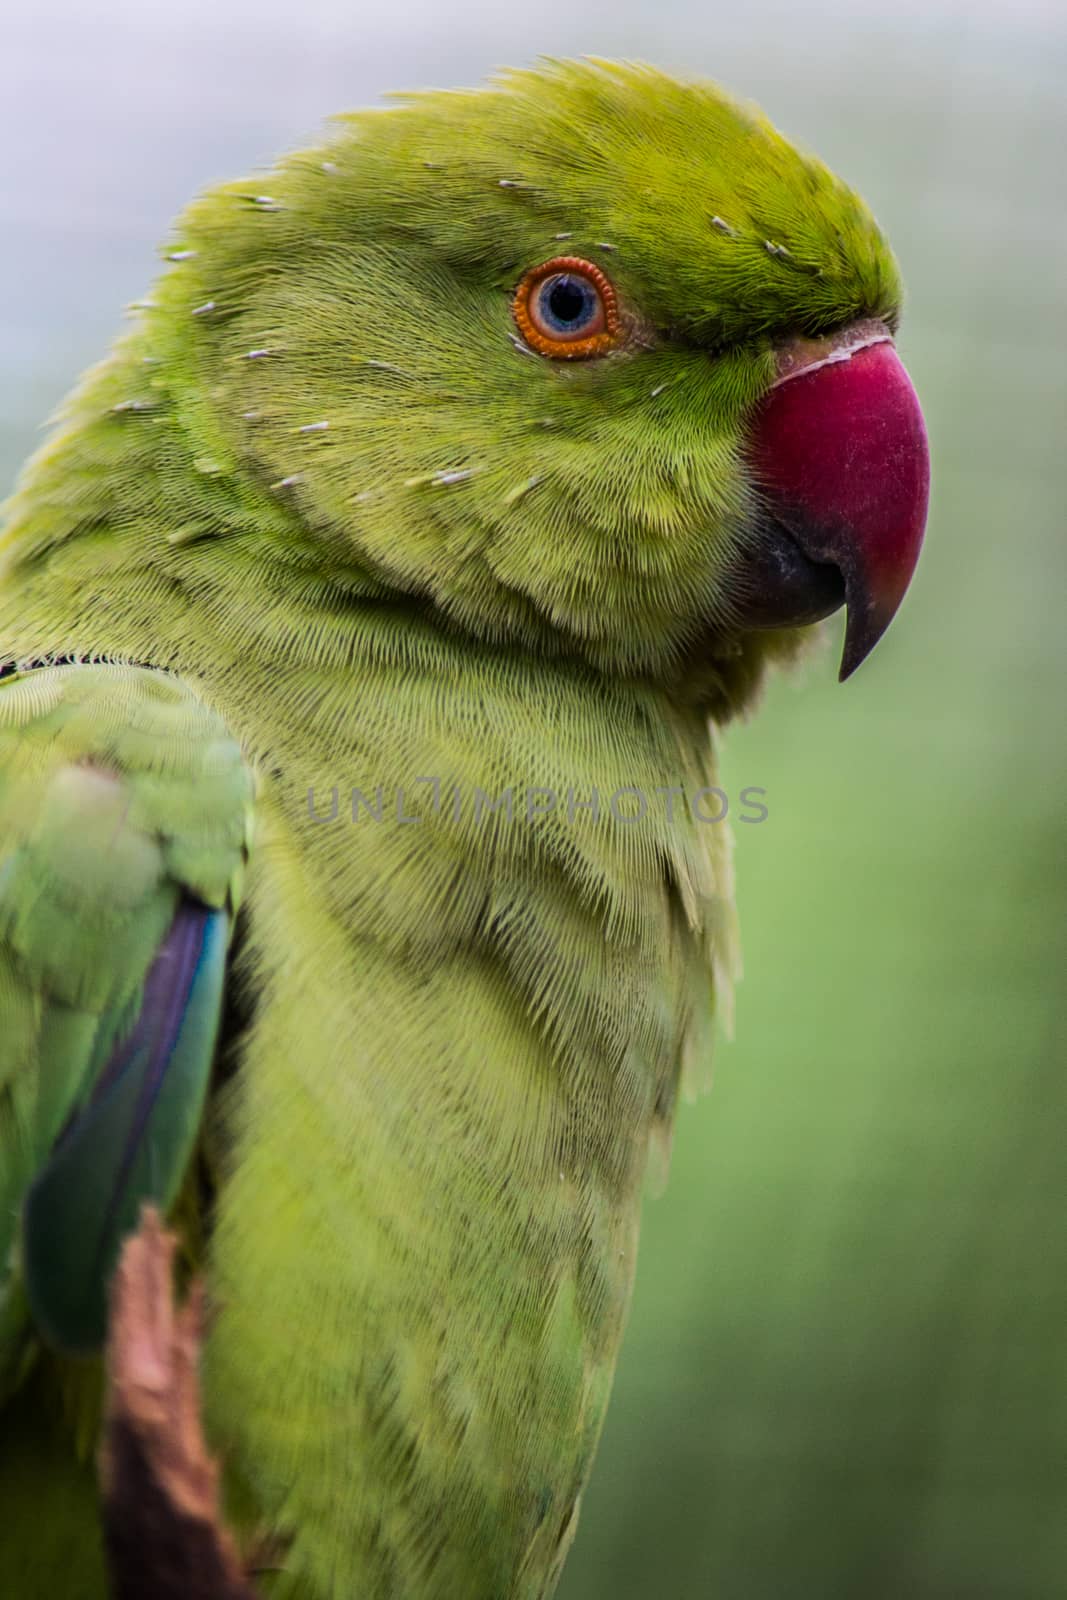 Indian Ringneck Parakeet Rose-Ringed Parakeet in close-up by kb79